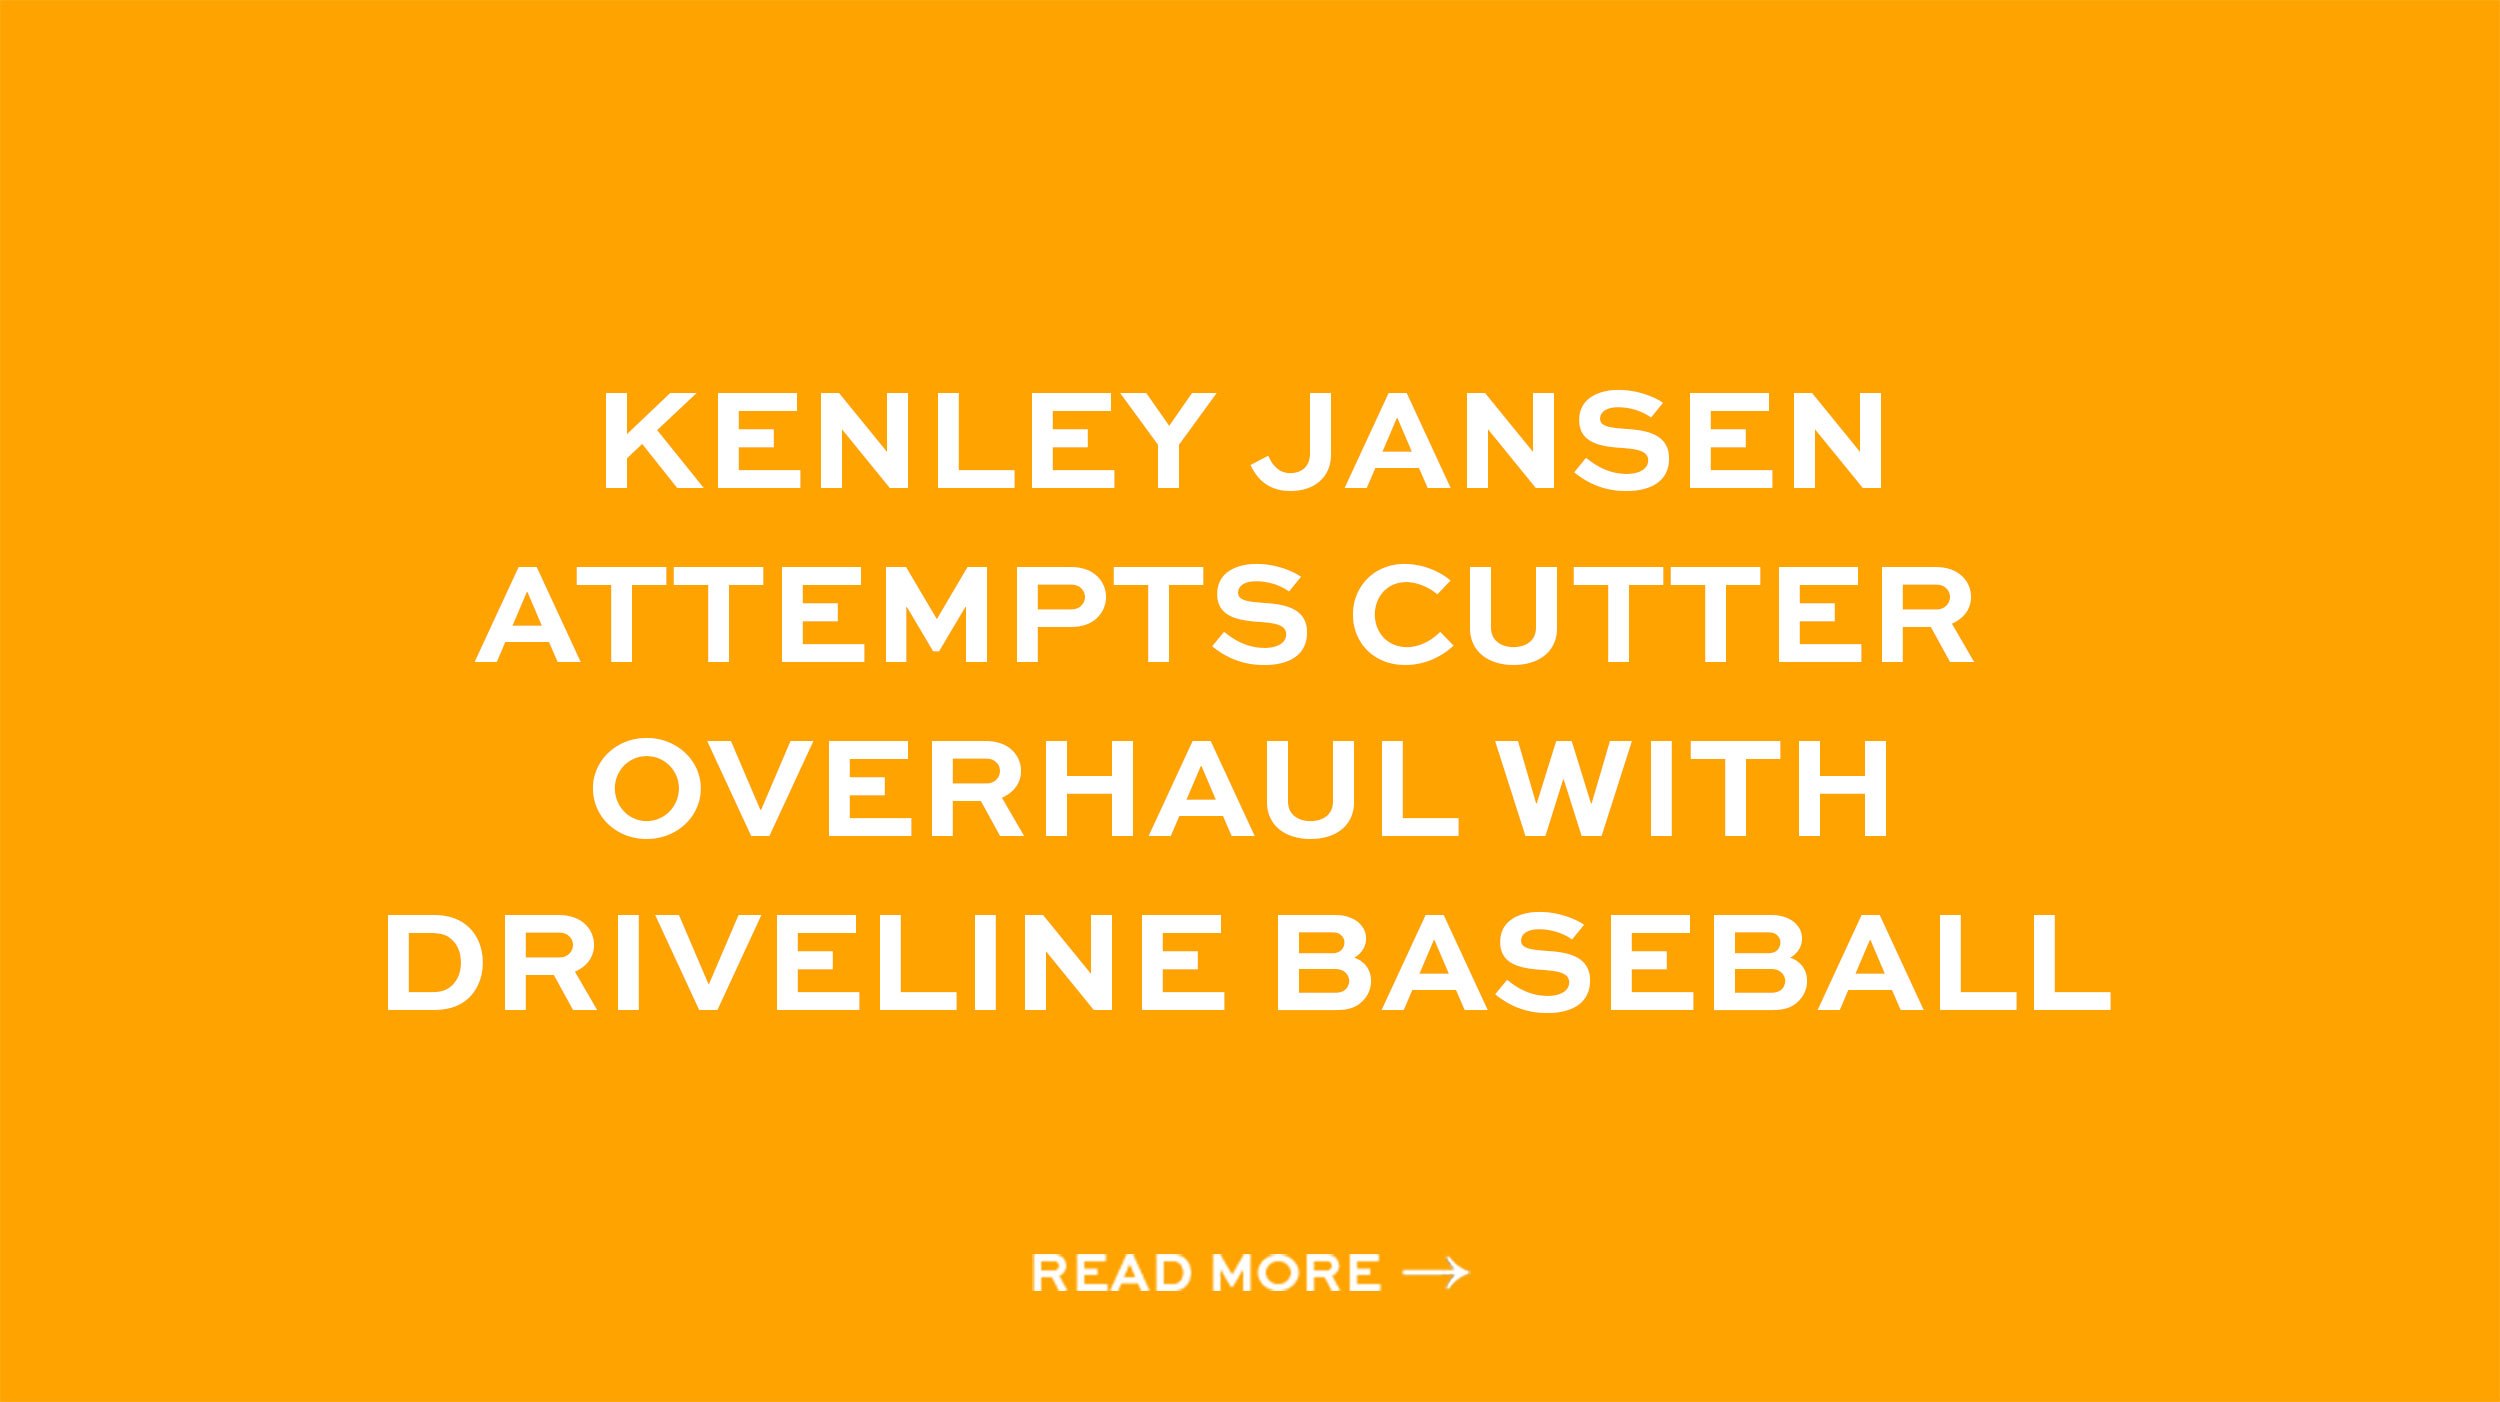 KENLEY JANSEN ATTEMPTS CUTTER OVERHAUL WITH DRIVELINE BASEBALL